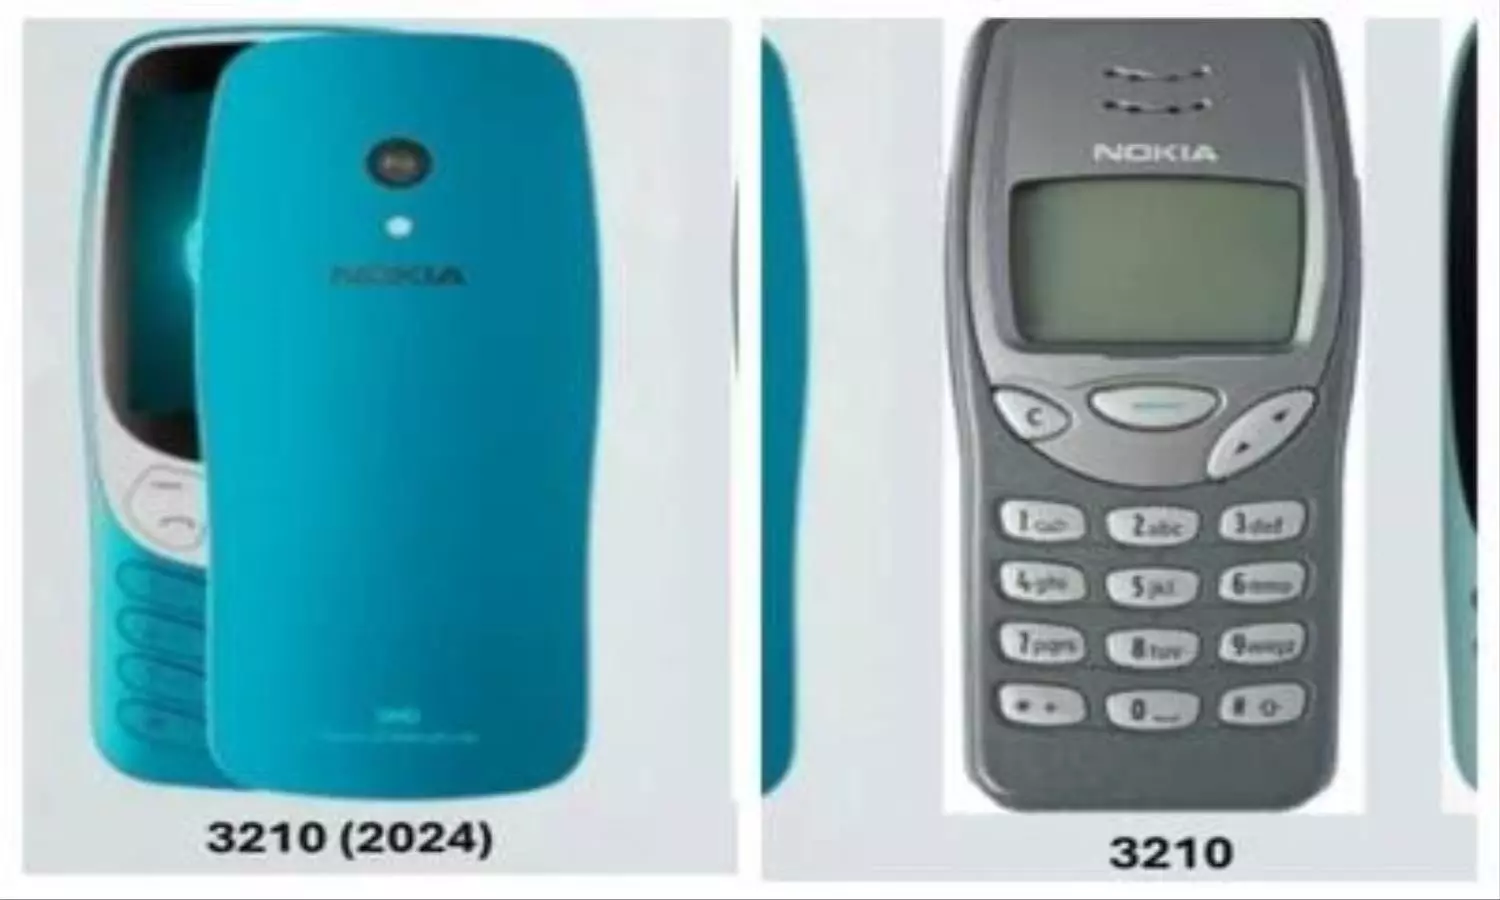 25 साल बाद लौट रहा है Nokia 3210, धांसू फीचर्स से होगा लैस